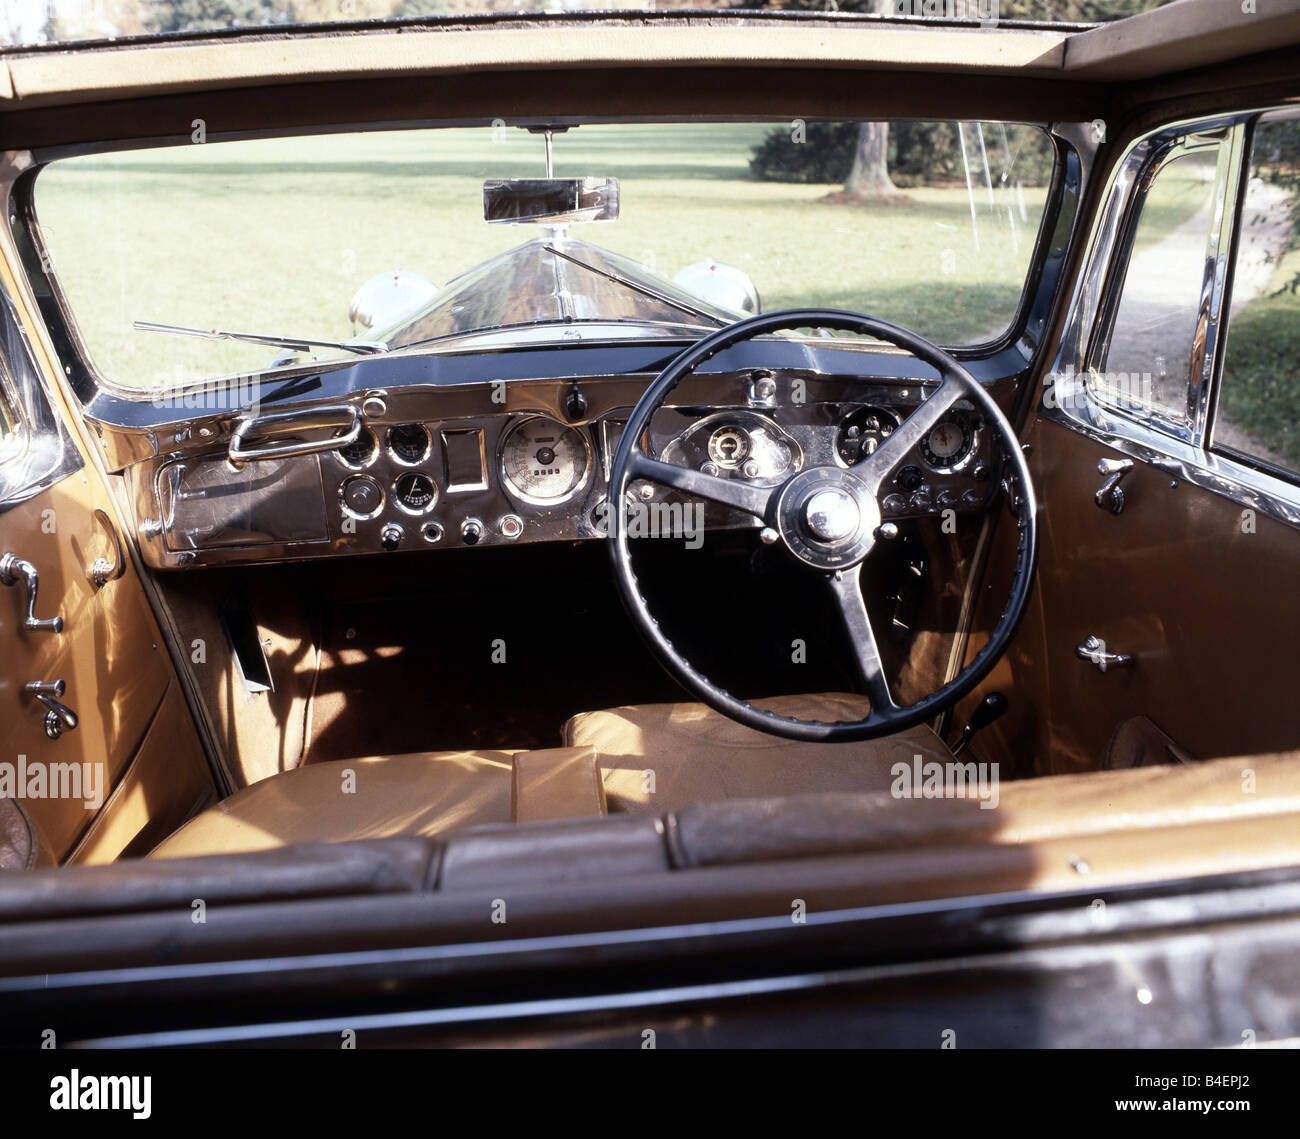 Voiture, Rolls Royce Phantom III, l'année de modèle 1936-1939, noir,  berline, voiture d'époque, années 30, années 30, l'intérieur, l'habitacle,  Technics, tec Photo Stock - Alamy